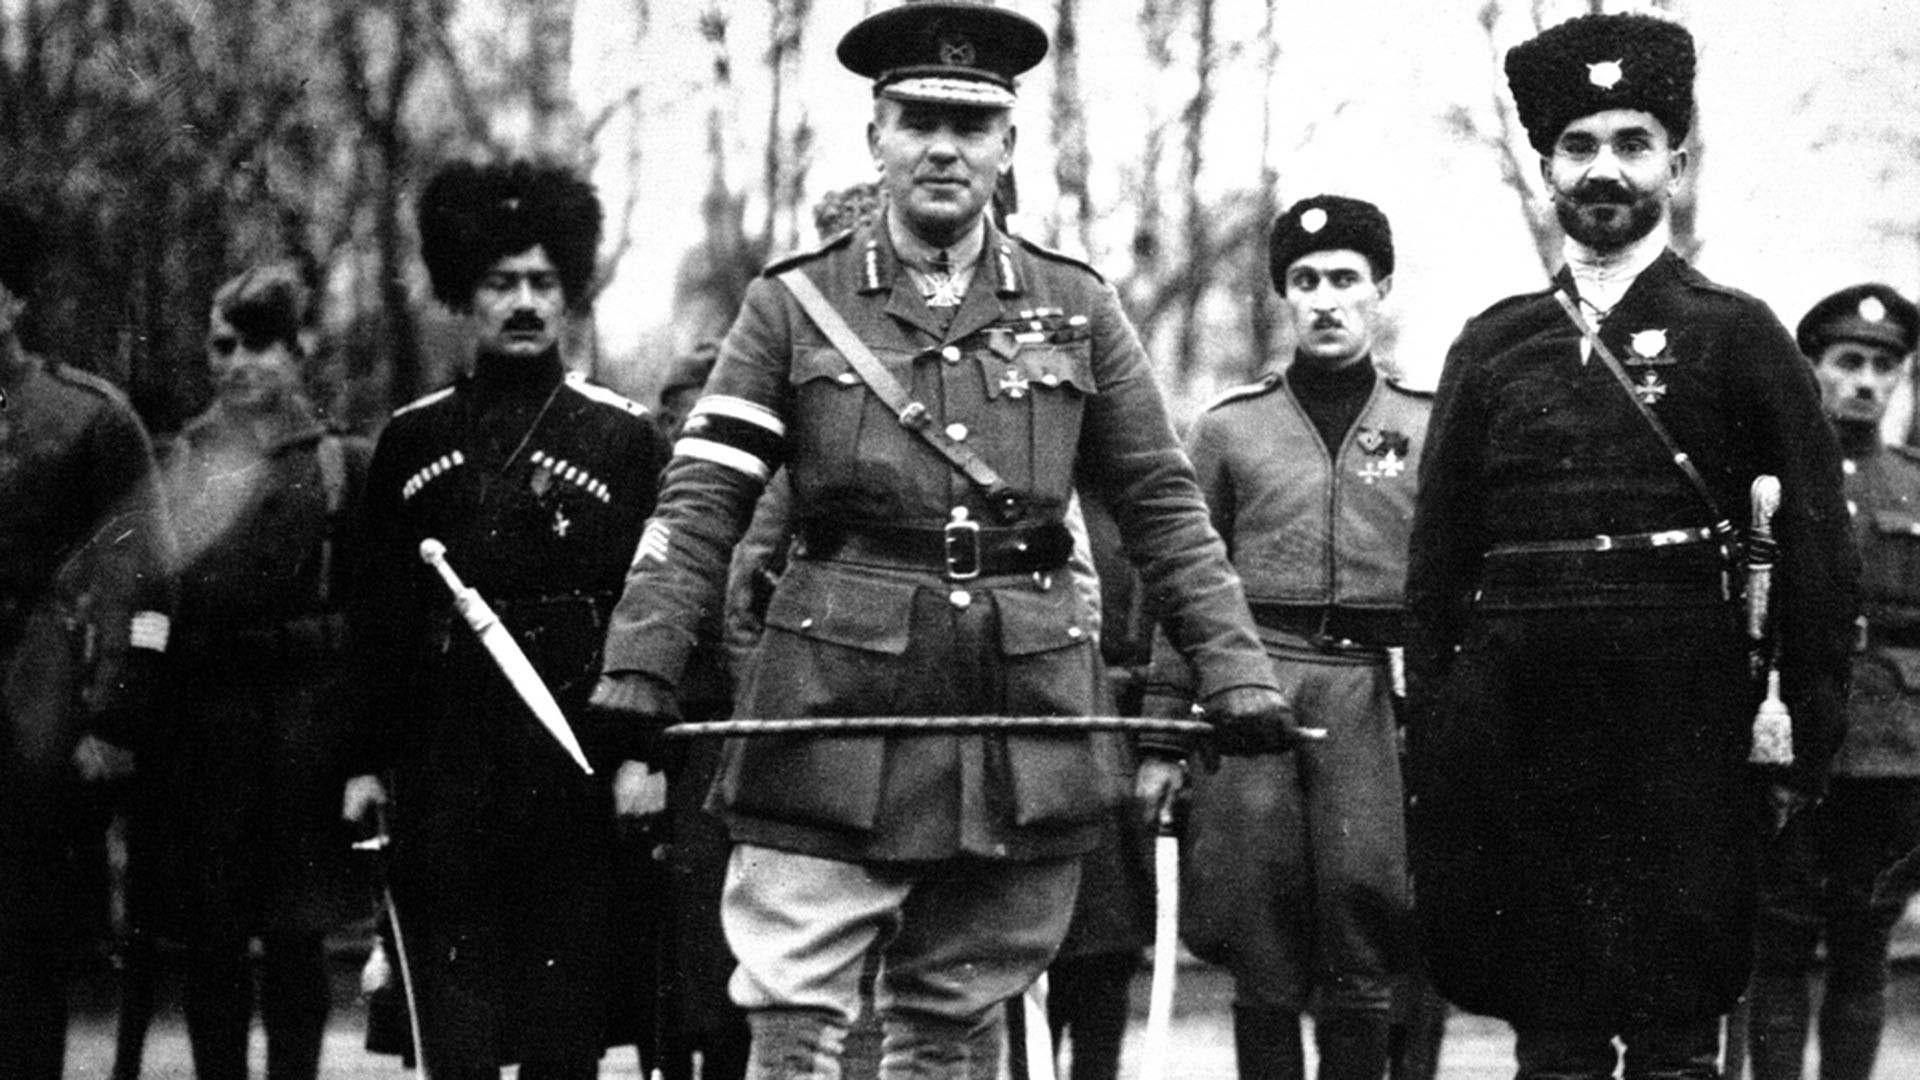 Британски генерал Фредерик Пул, који је командовао савезничким снагама у Архангелску до октобра 1918. године, заједно са козацима. Касније је стациониран са „белом“ трупама на југу Русије.